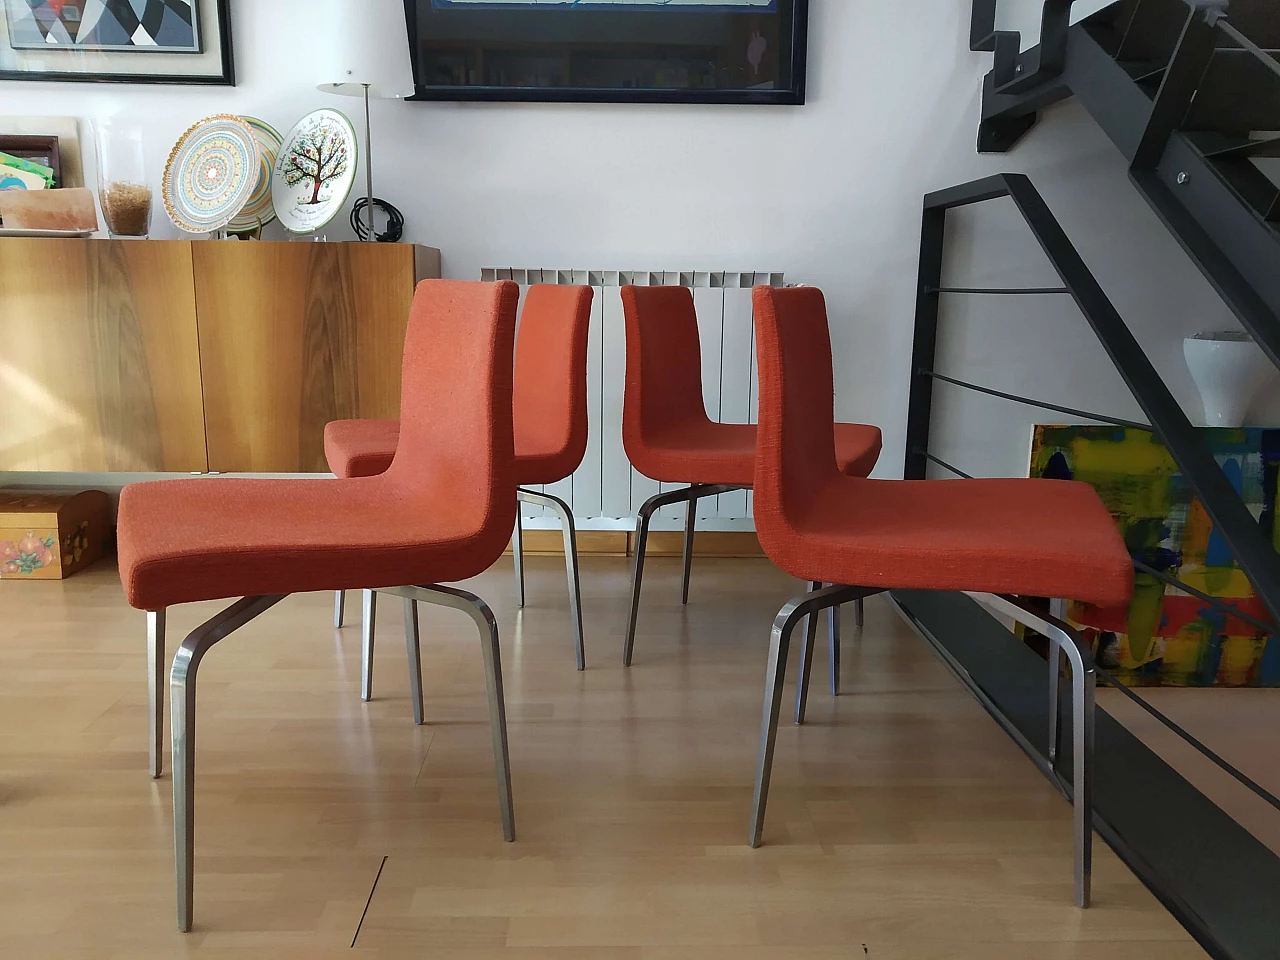 4 Hella Chairs by Mauro Lipparini for MisuraEmme 1477202